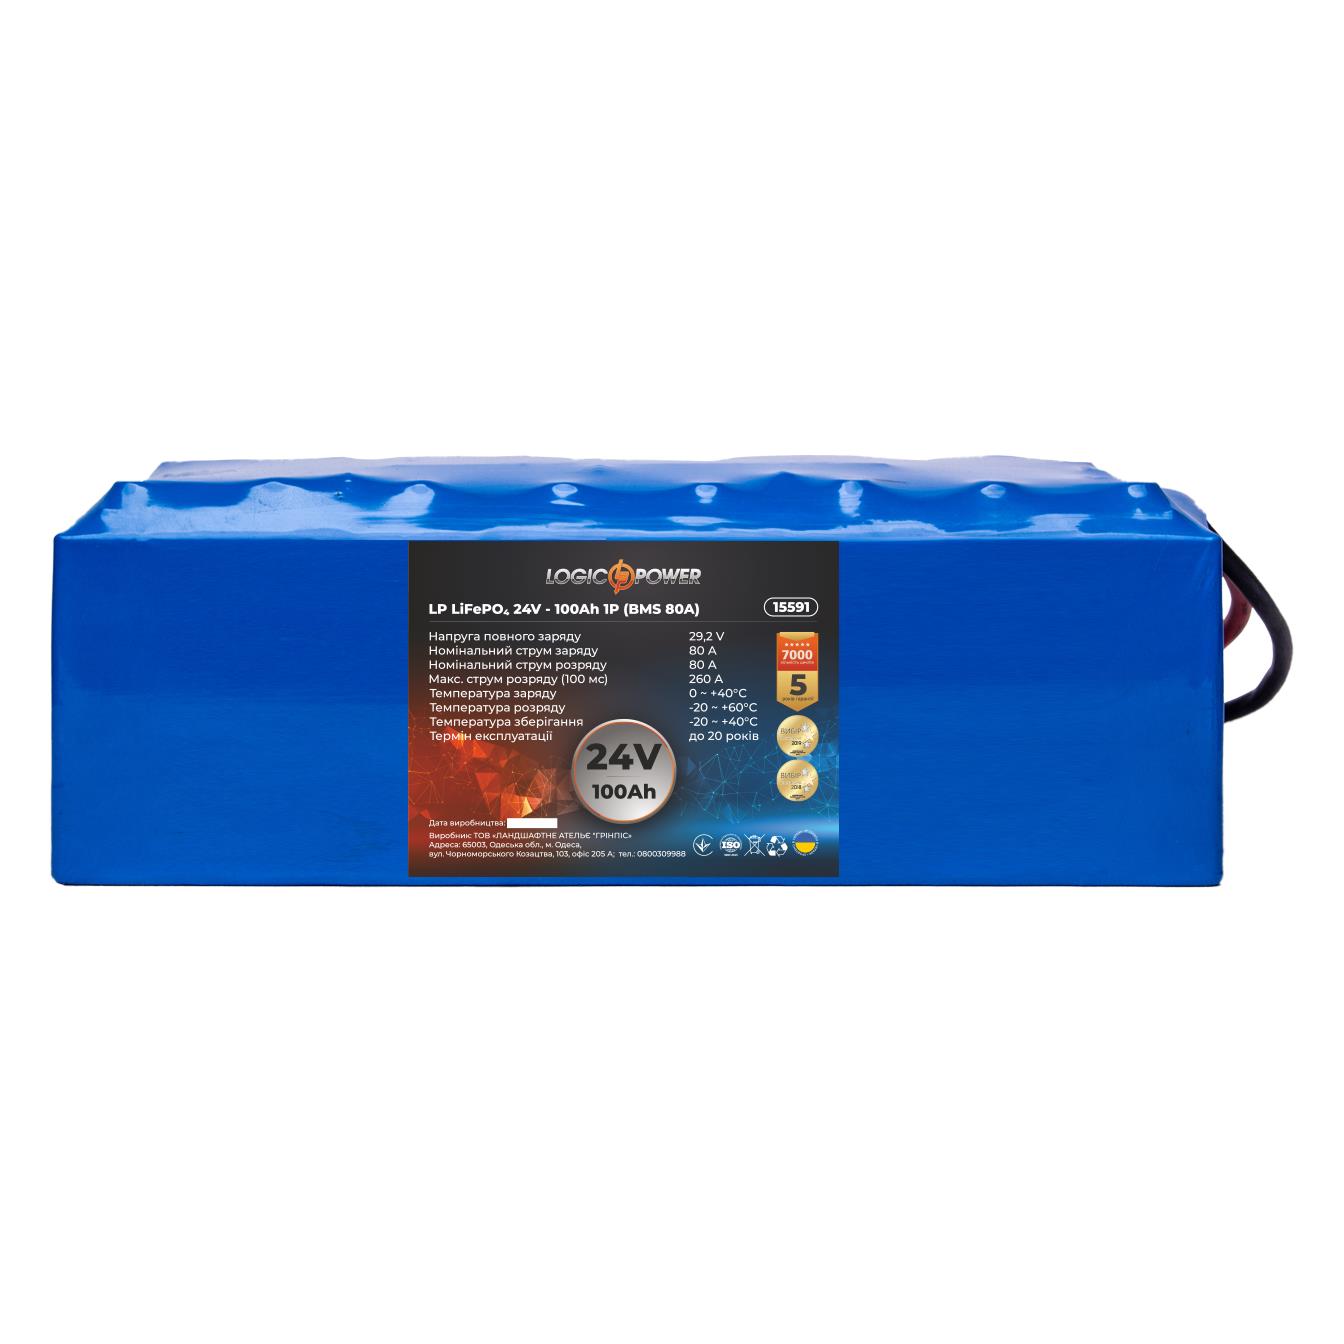 Аккумулятор литий-железо-фосфатный LogicPower LP LiFePO4 24V - 100 Ah (BMS 80A) (15591)